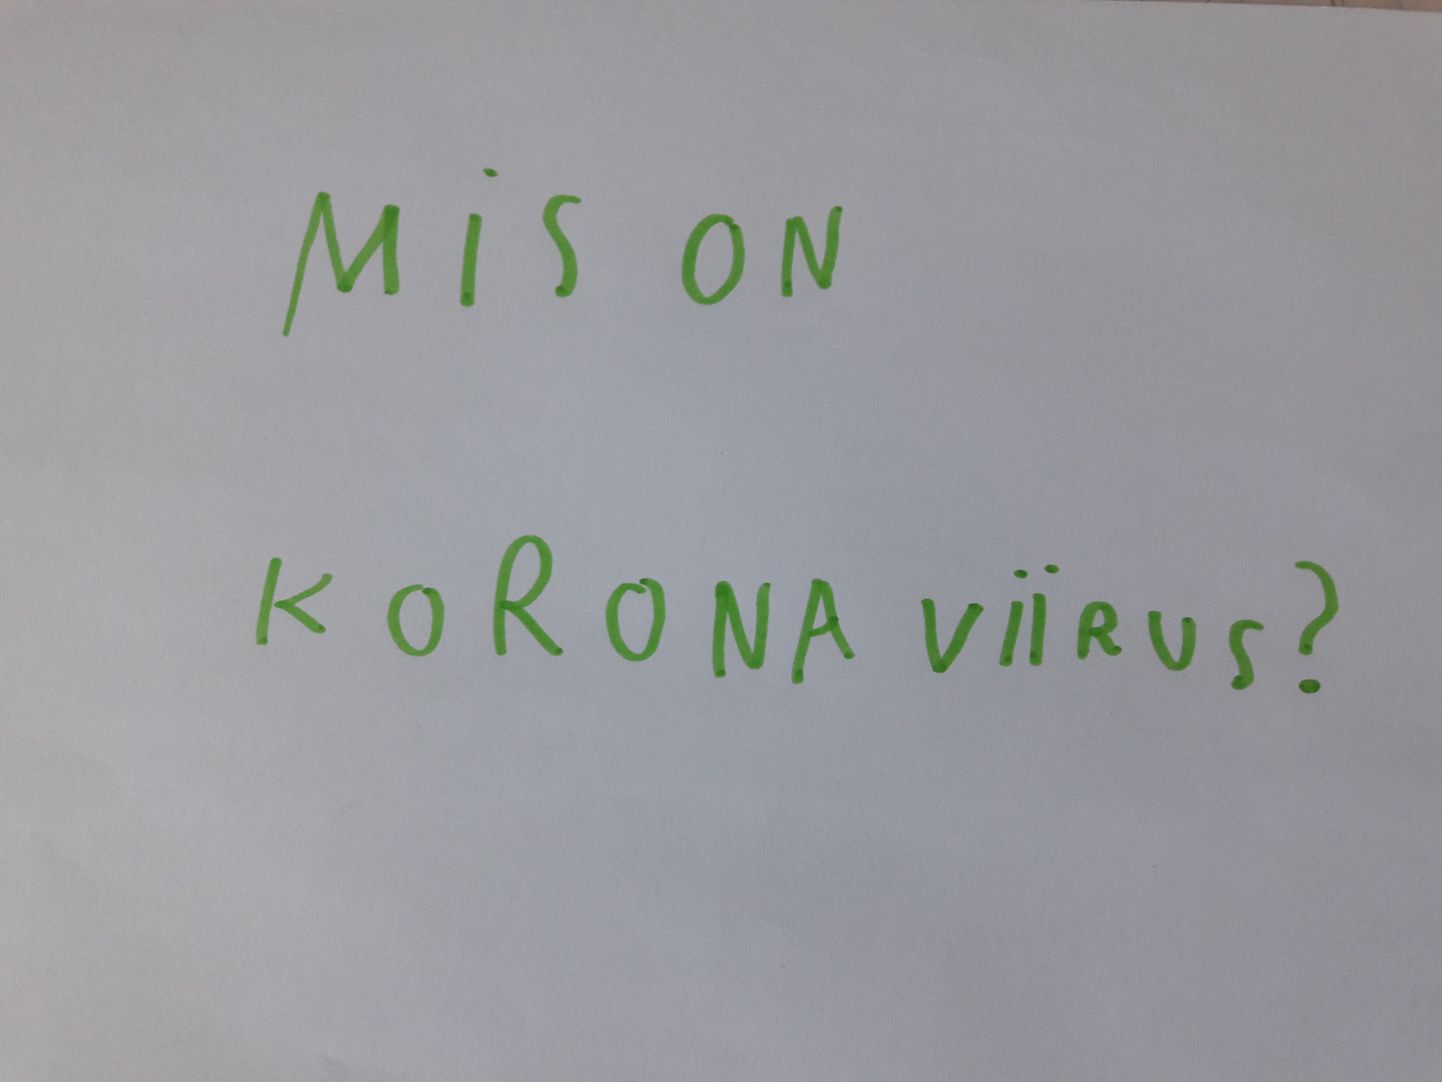 Информация о коронавирусе, предоставляемая ребенку, должна быть достоверной, конкретной и соответствующей возрасту.